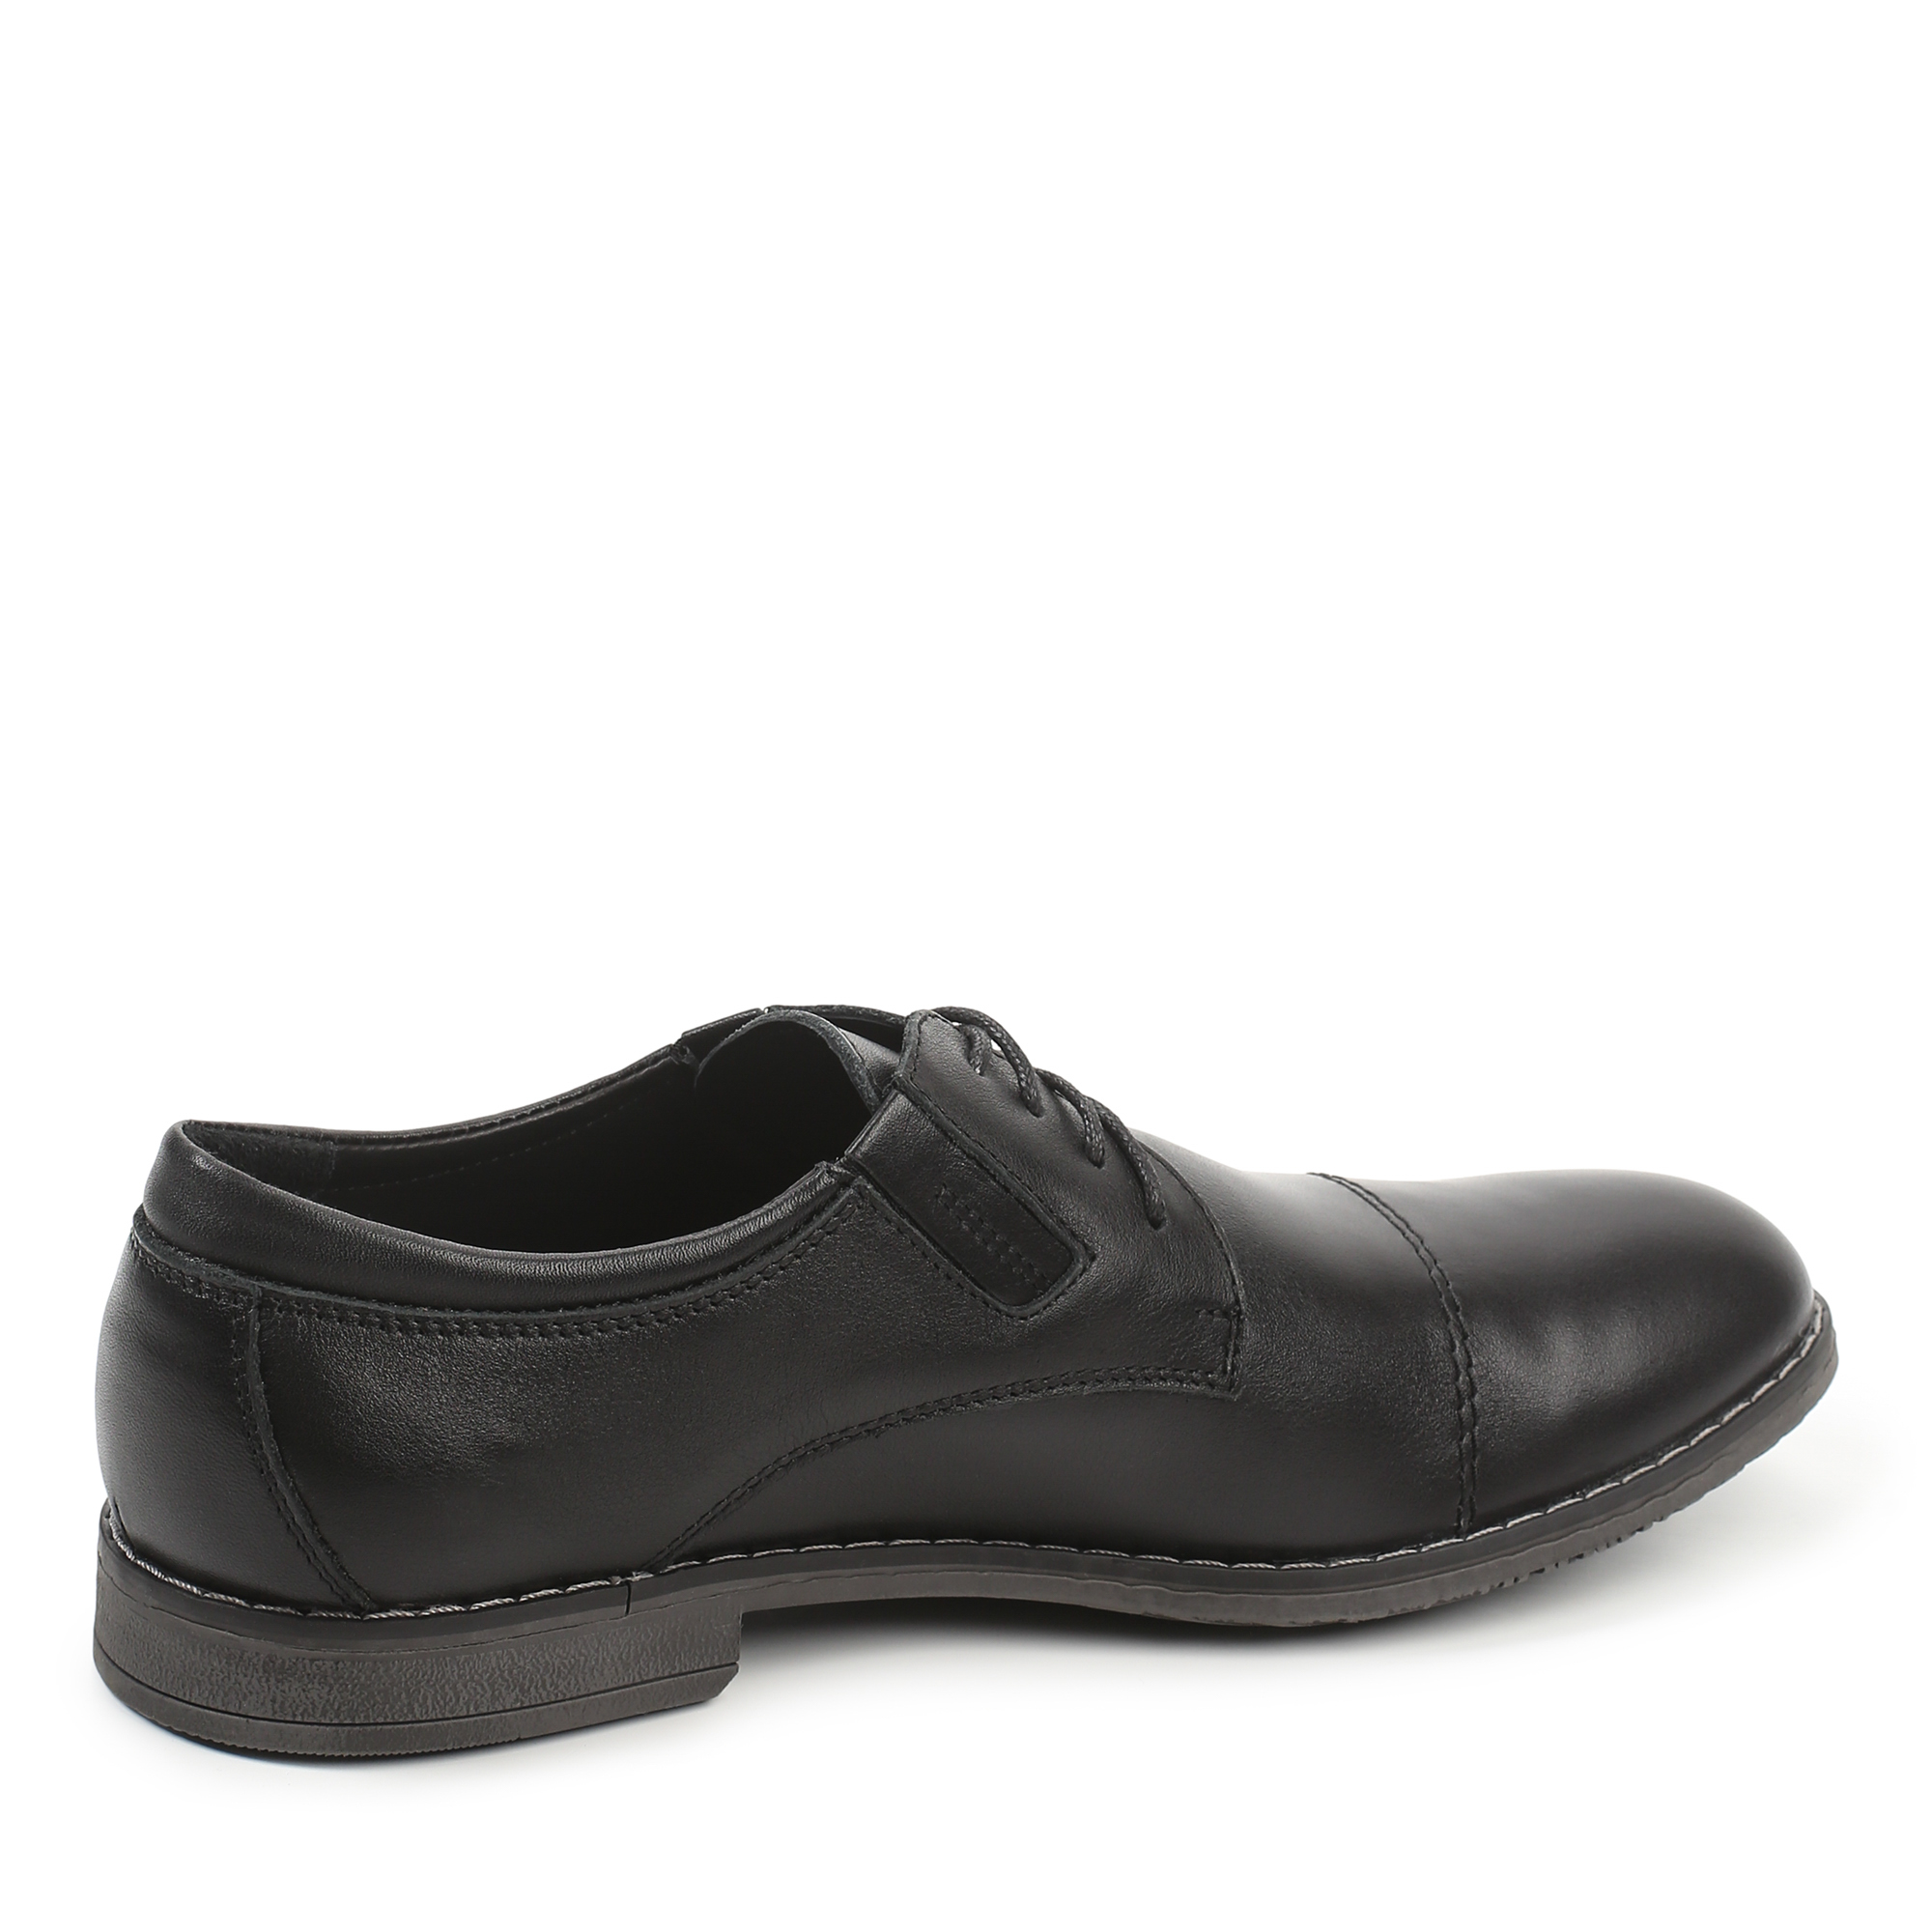 Туфли/полуботинки Thomas Munz 335-127A-1102, цвет черный, размер 41 - фото 3